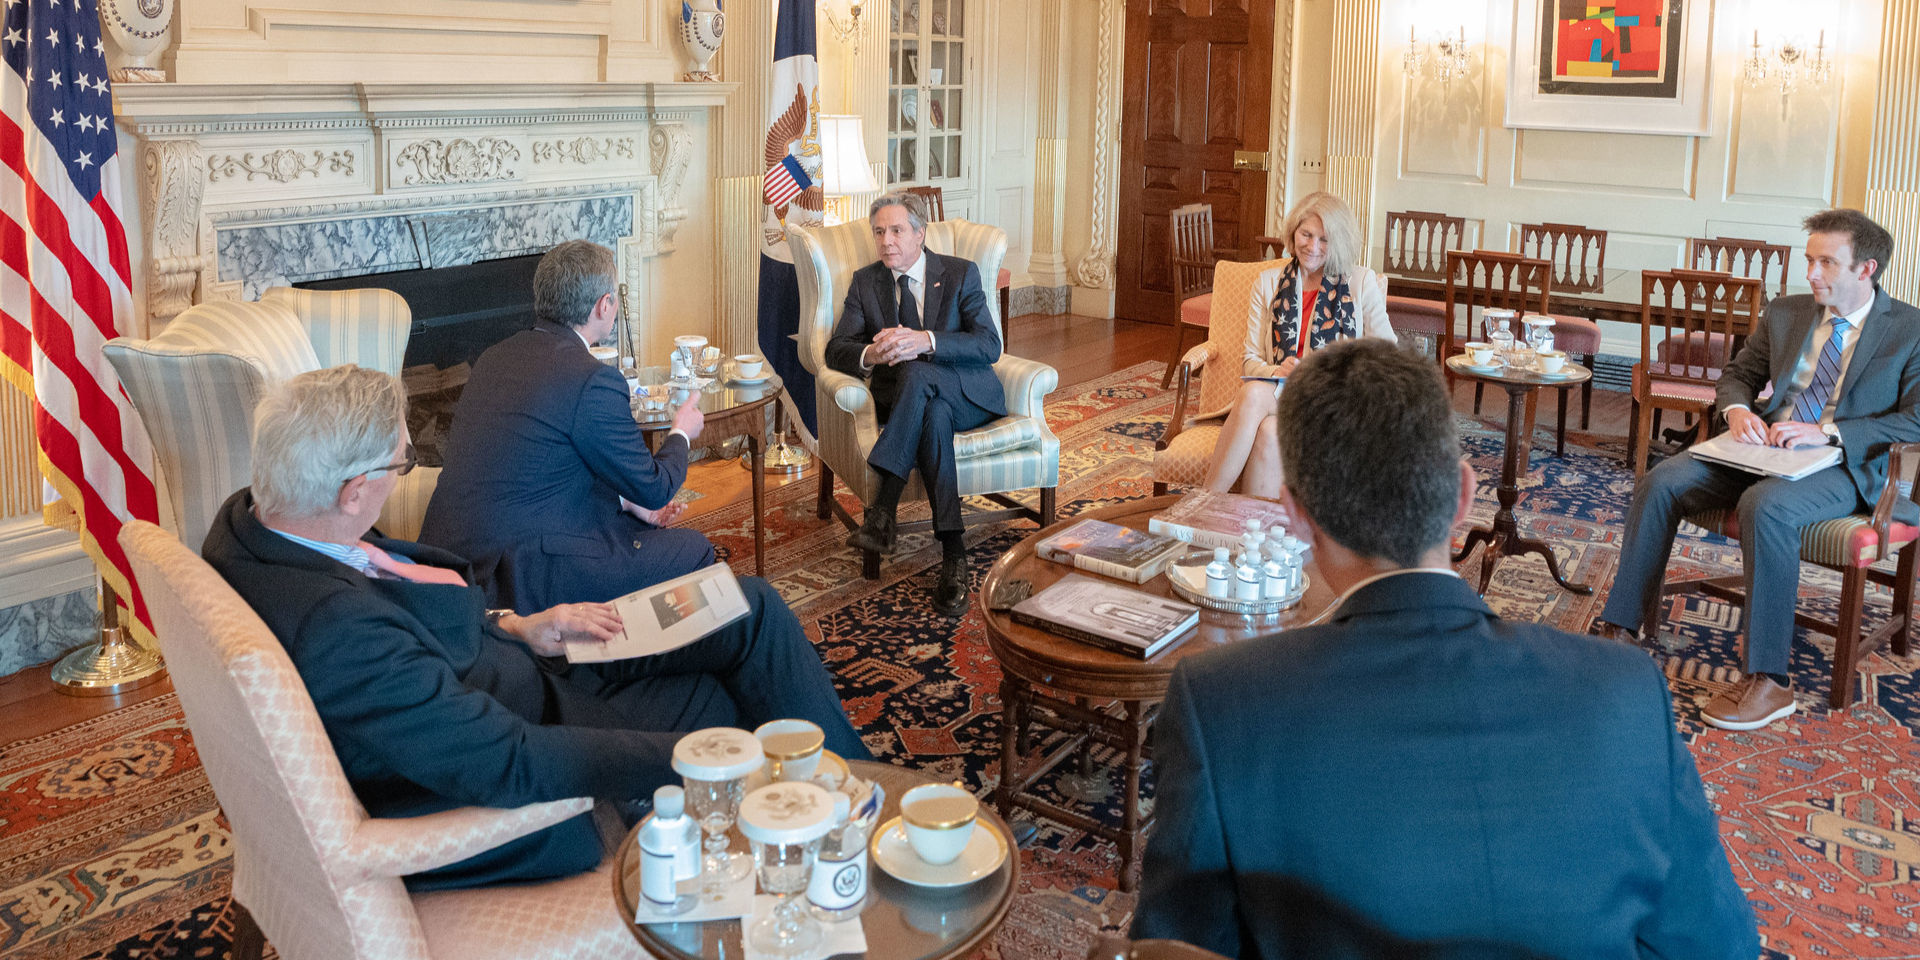 Six personnes sont assises autour d’une petite table en bois. Parmi celles-ci, le conseiller fédéral Ignazio Cassis discute avec le secrétaire d’État des États-Unis Anthony Blinken.